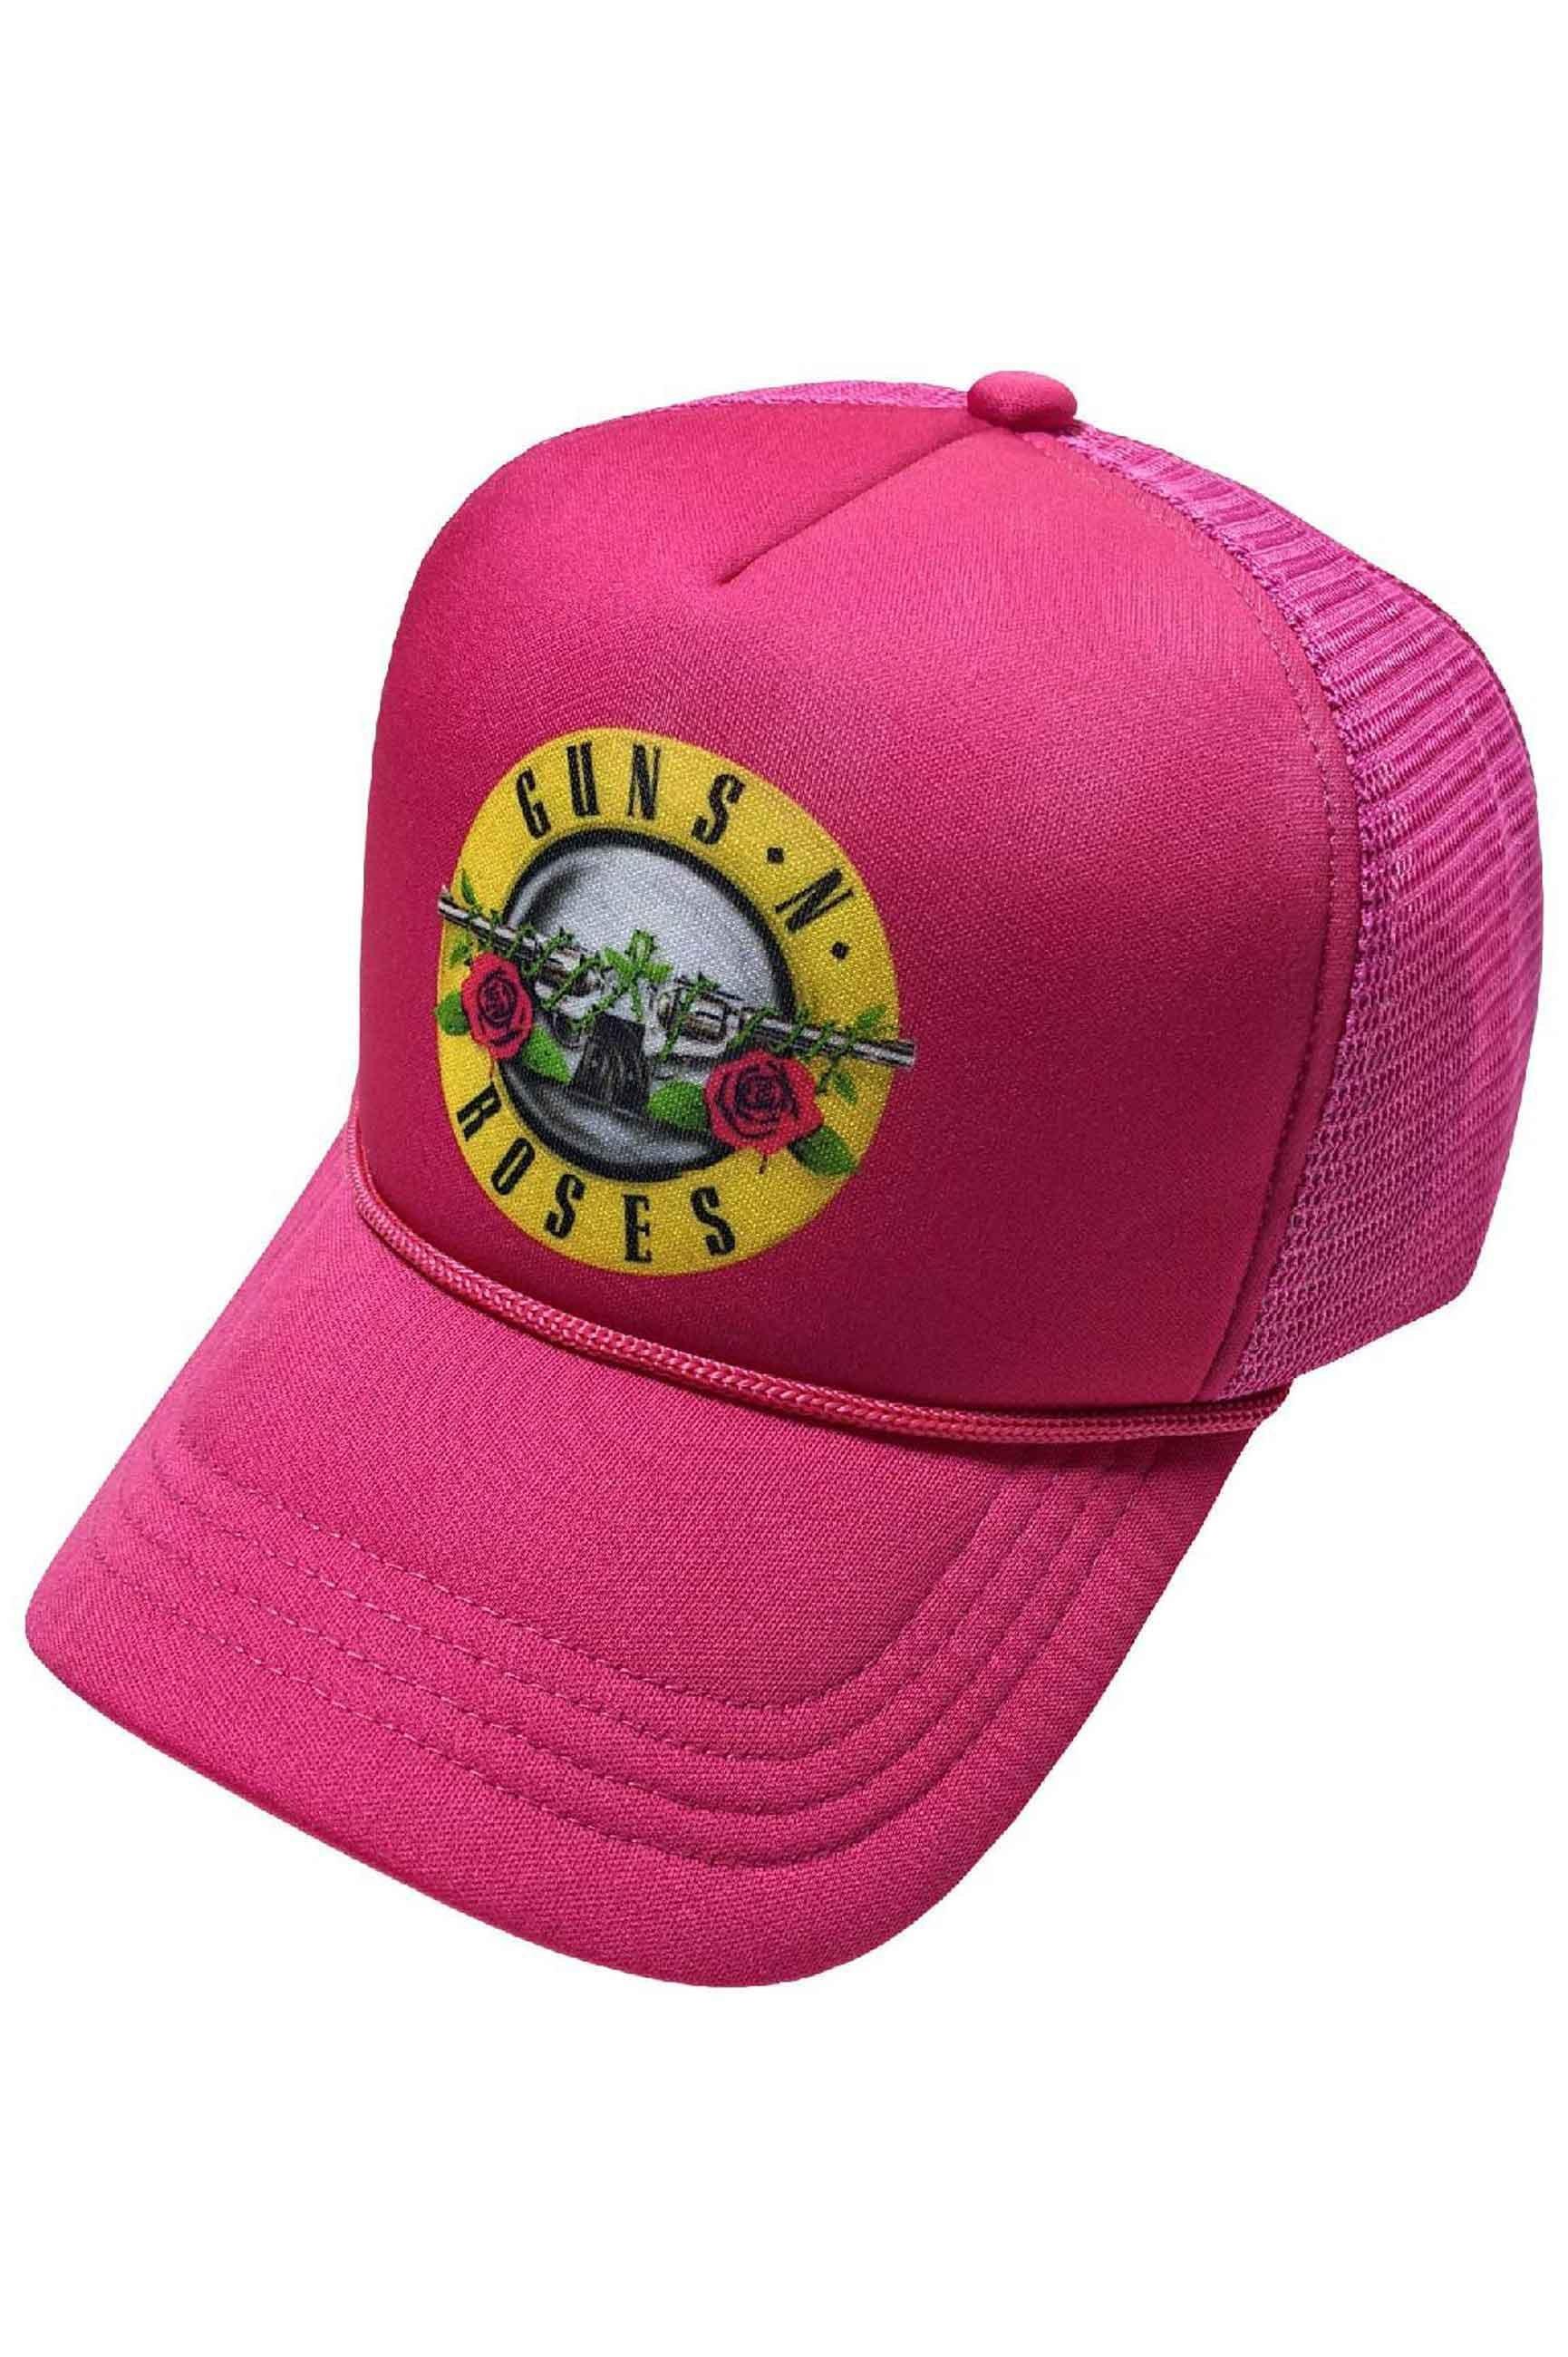 Бейсболка Trucker Classic Band с логотипом Guns N Roses, розовый кепка guns n roses 3 без сетки